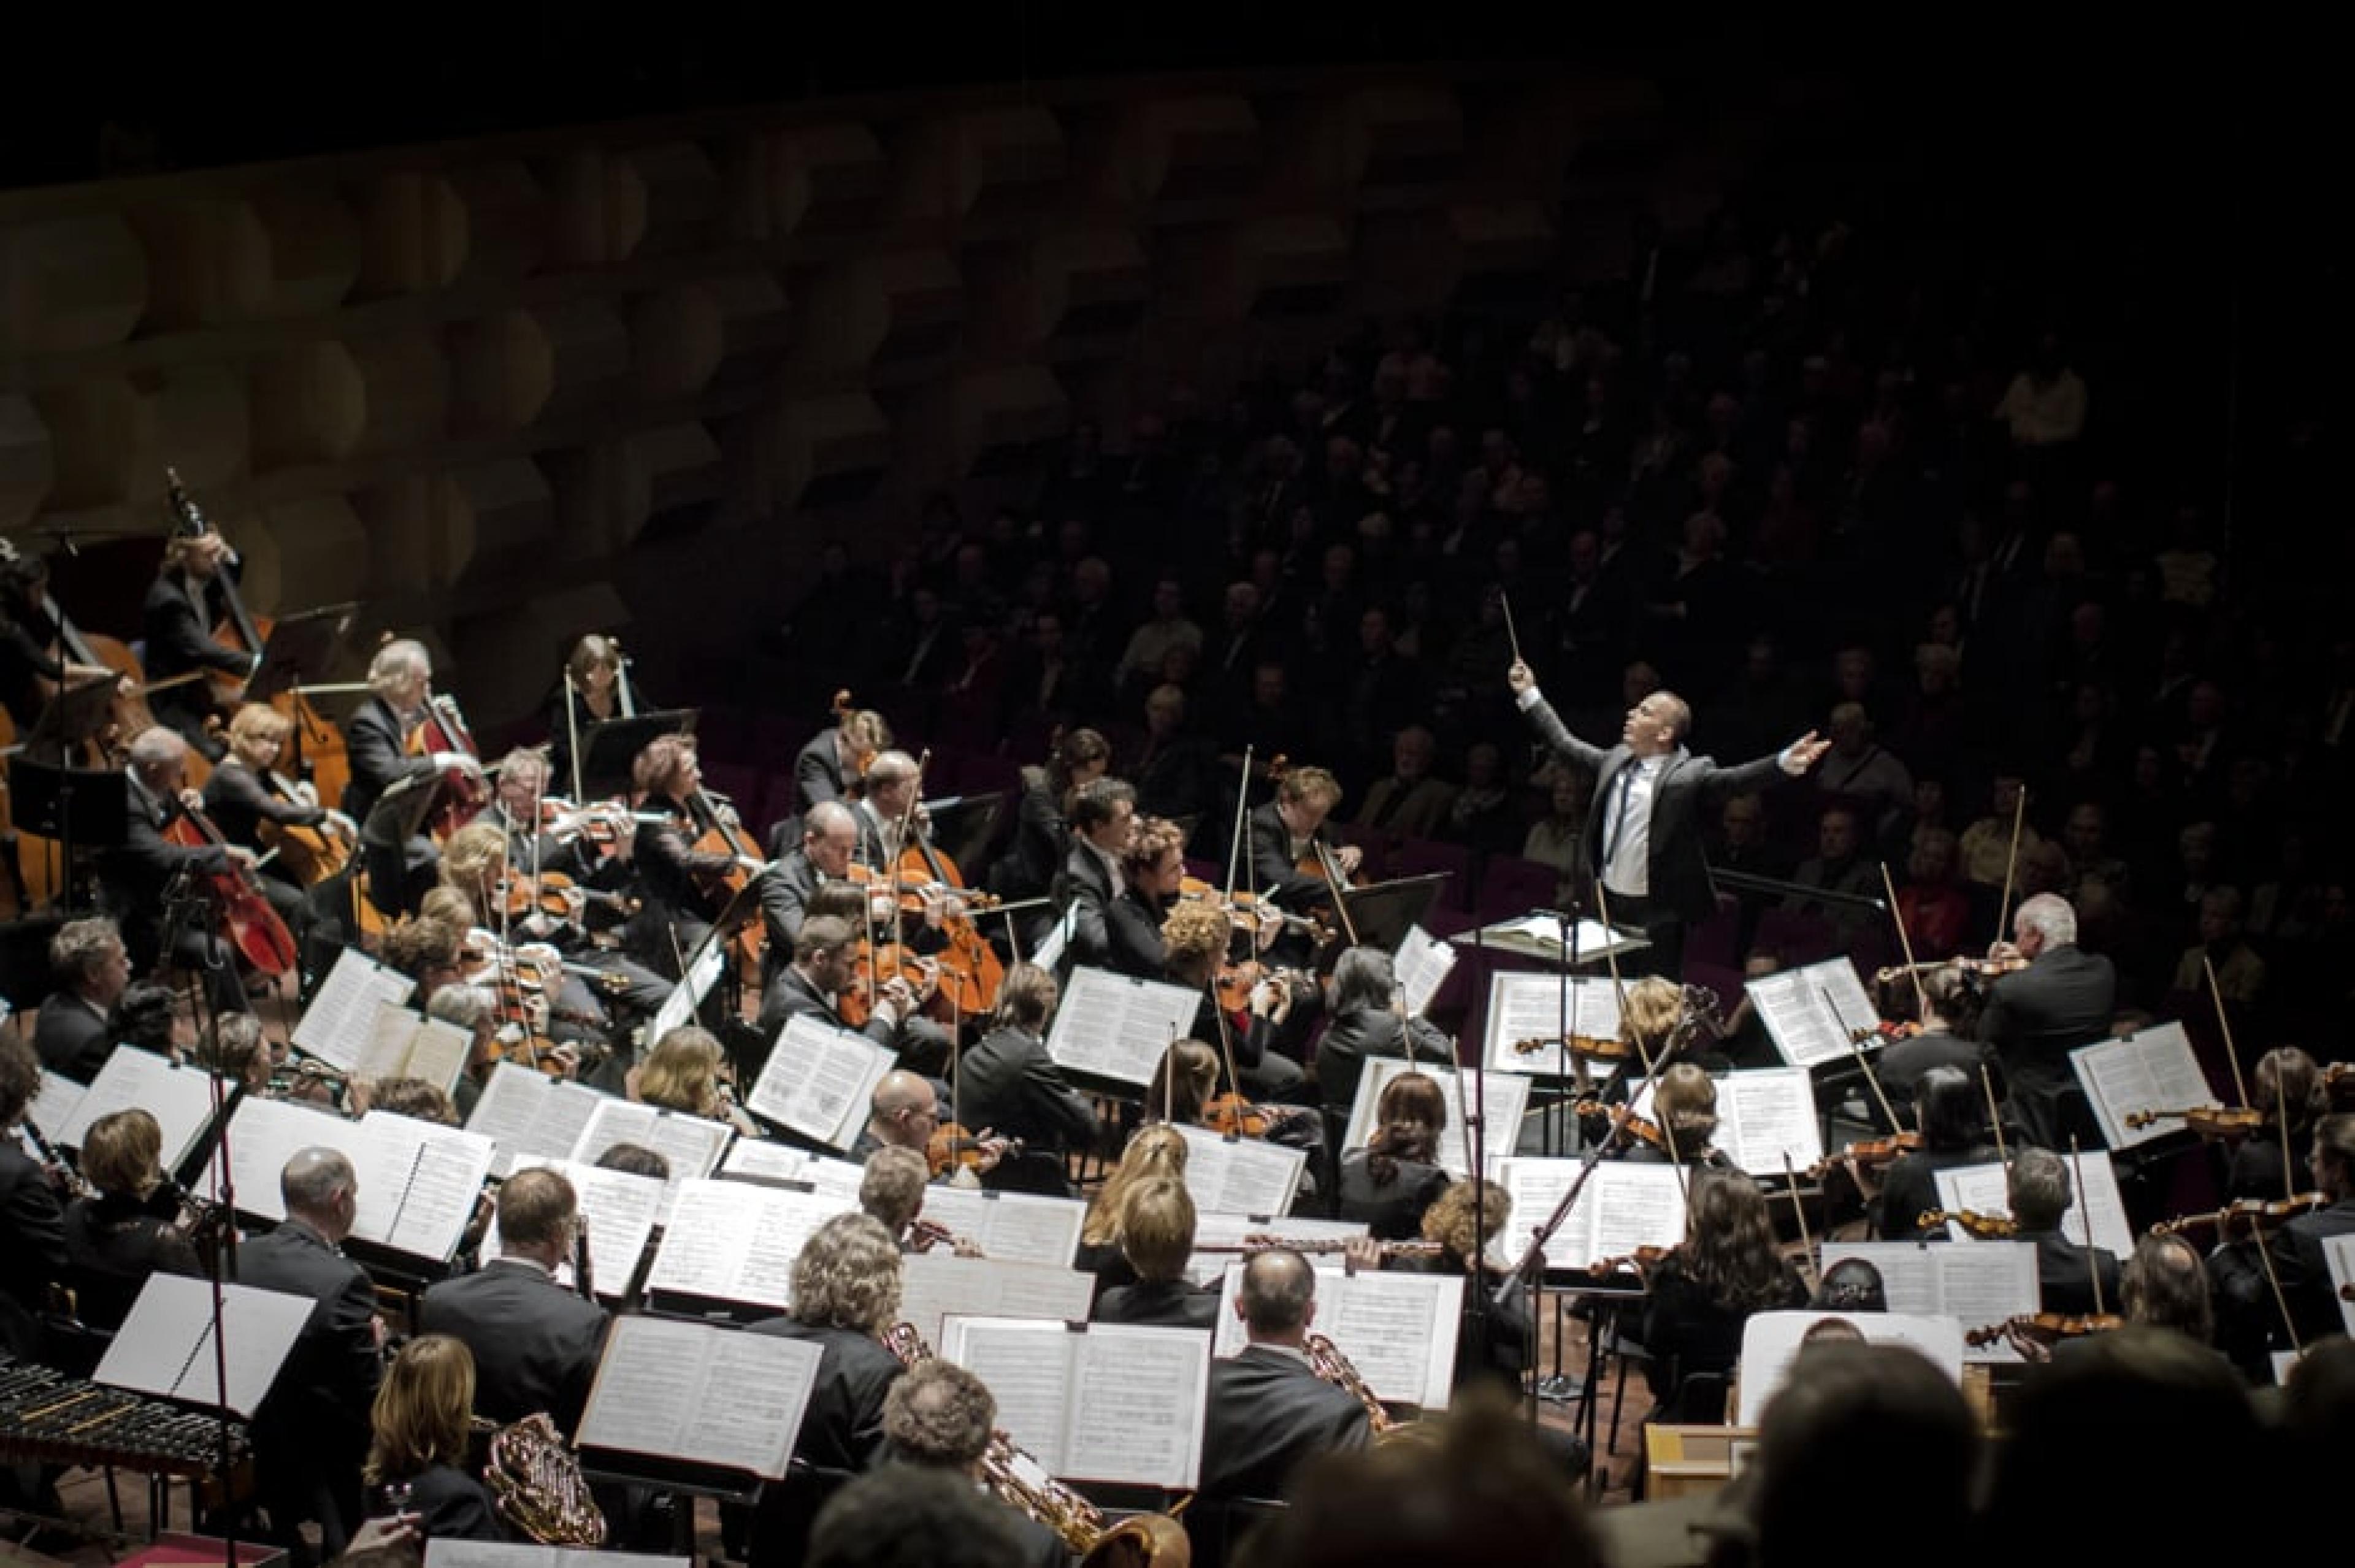 Rotterdam Philharmonic Orchestra; Yannick Nézet-Séguin, conductor
Photo credit: ©Hans van der Woerd